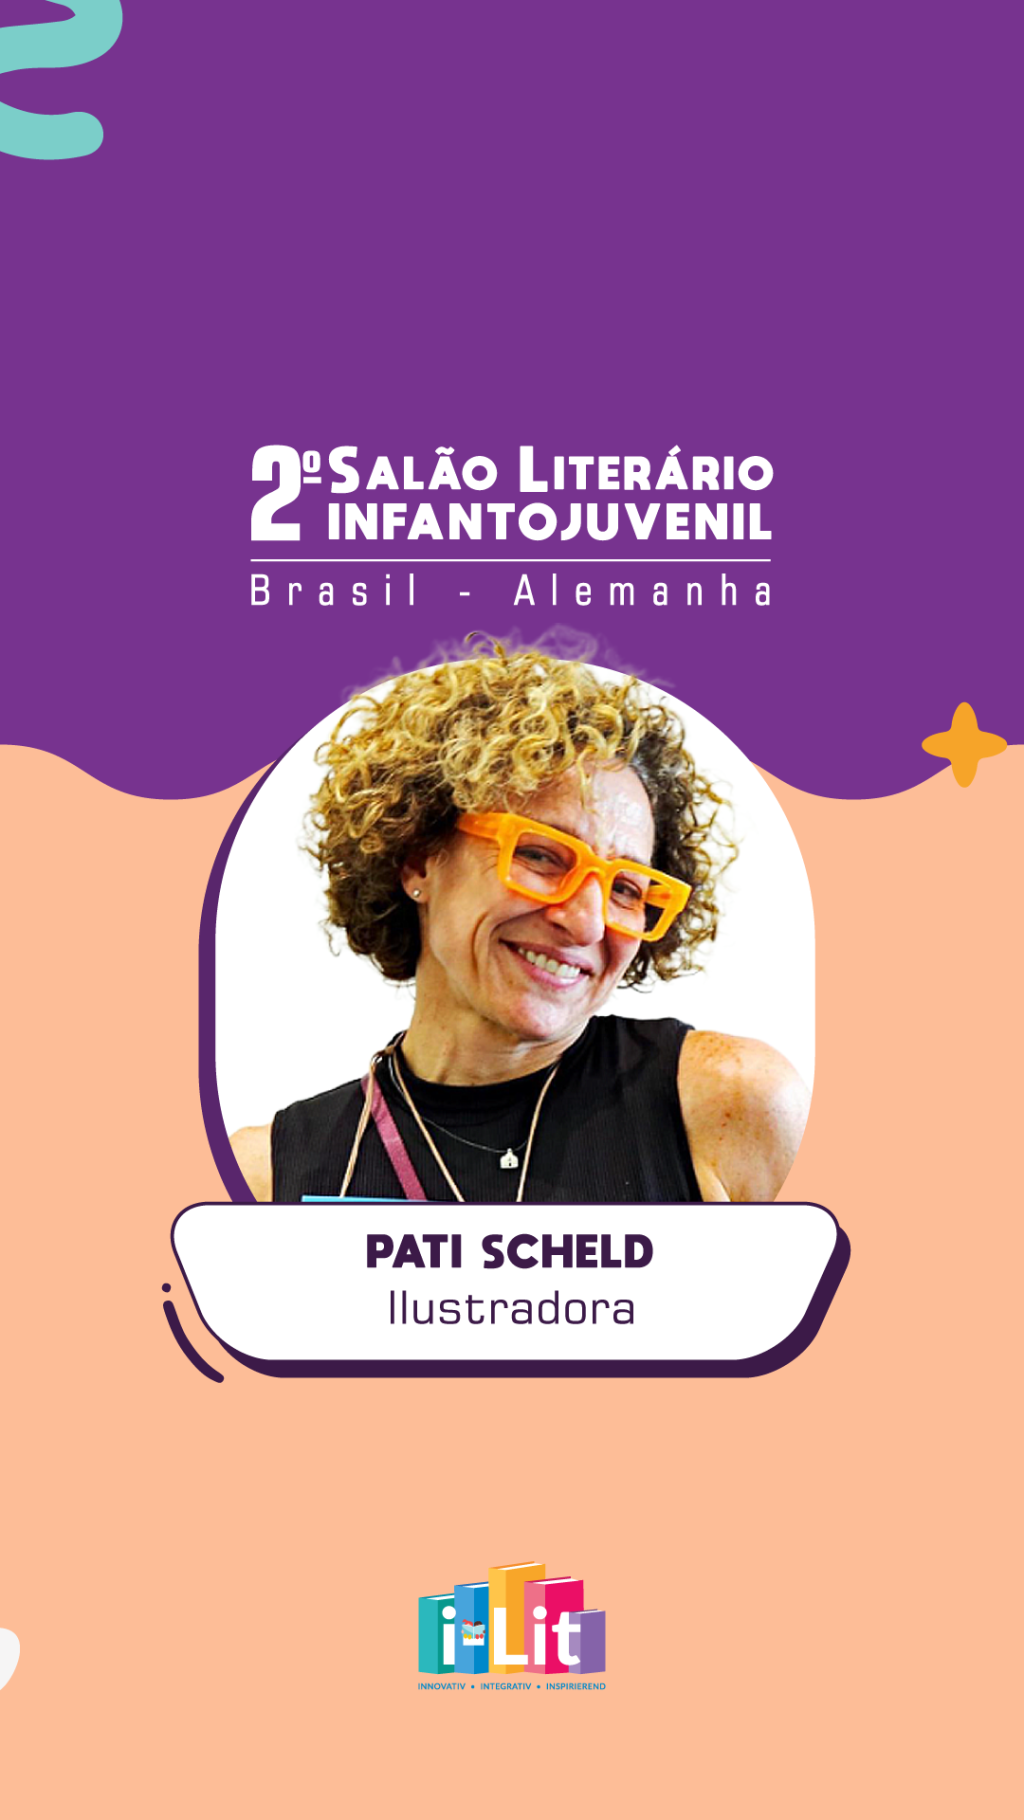 Confira o convite de Patricia Scheld, que estará presente no 2º Salão Literário Infantojuvenil Brasil – Alemanha!